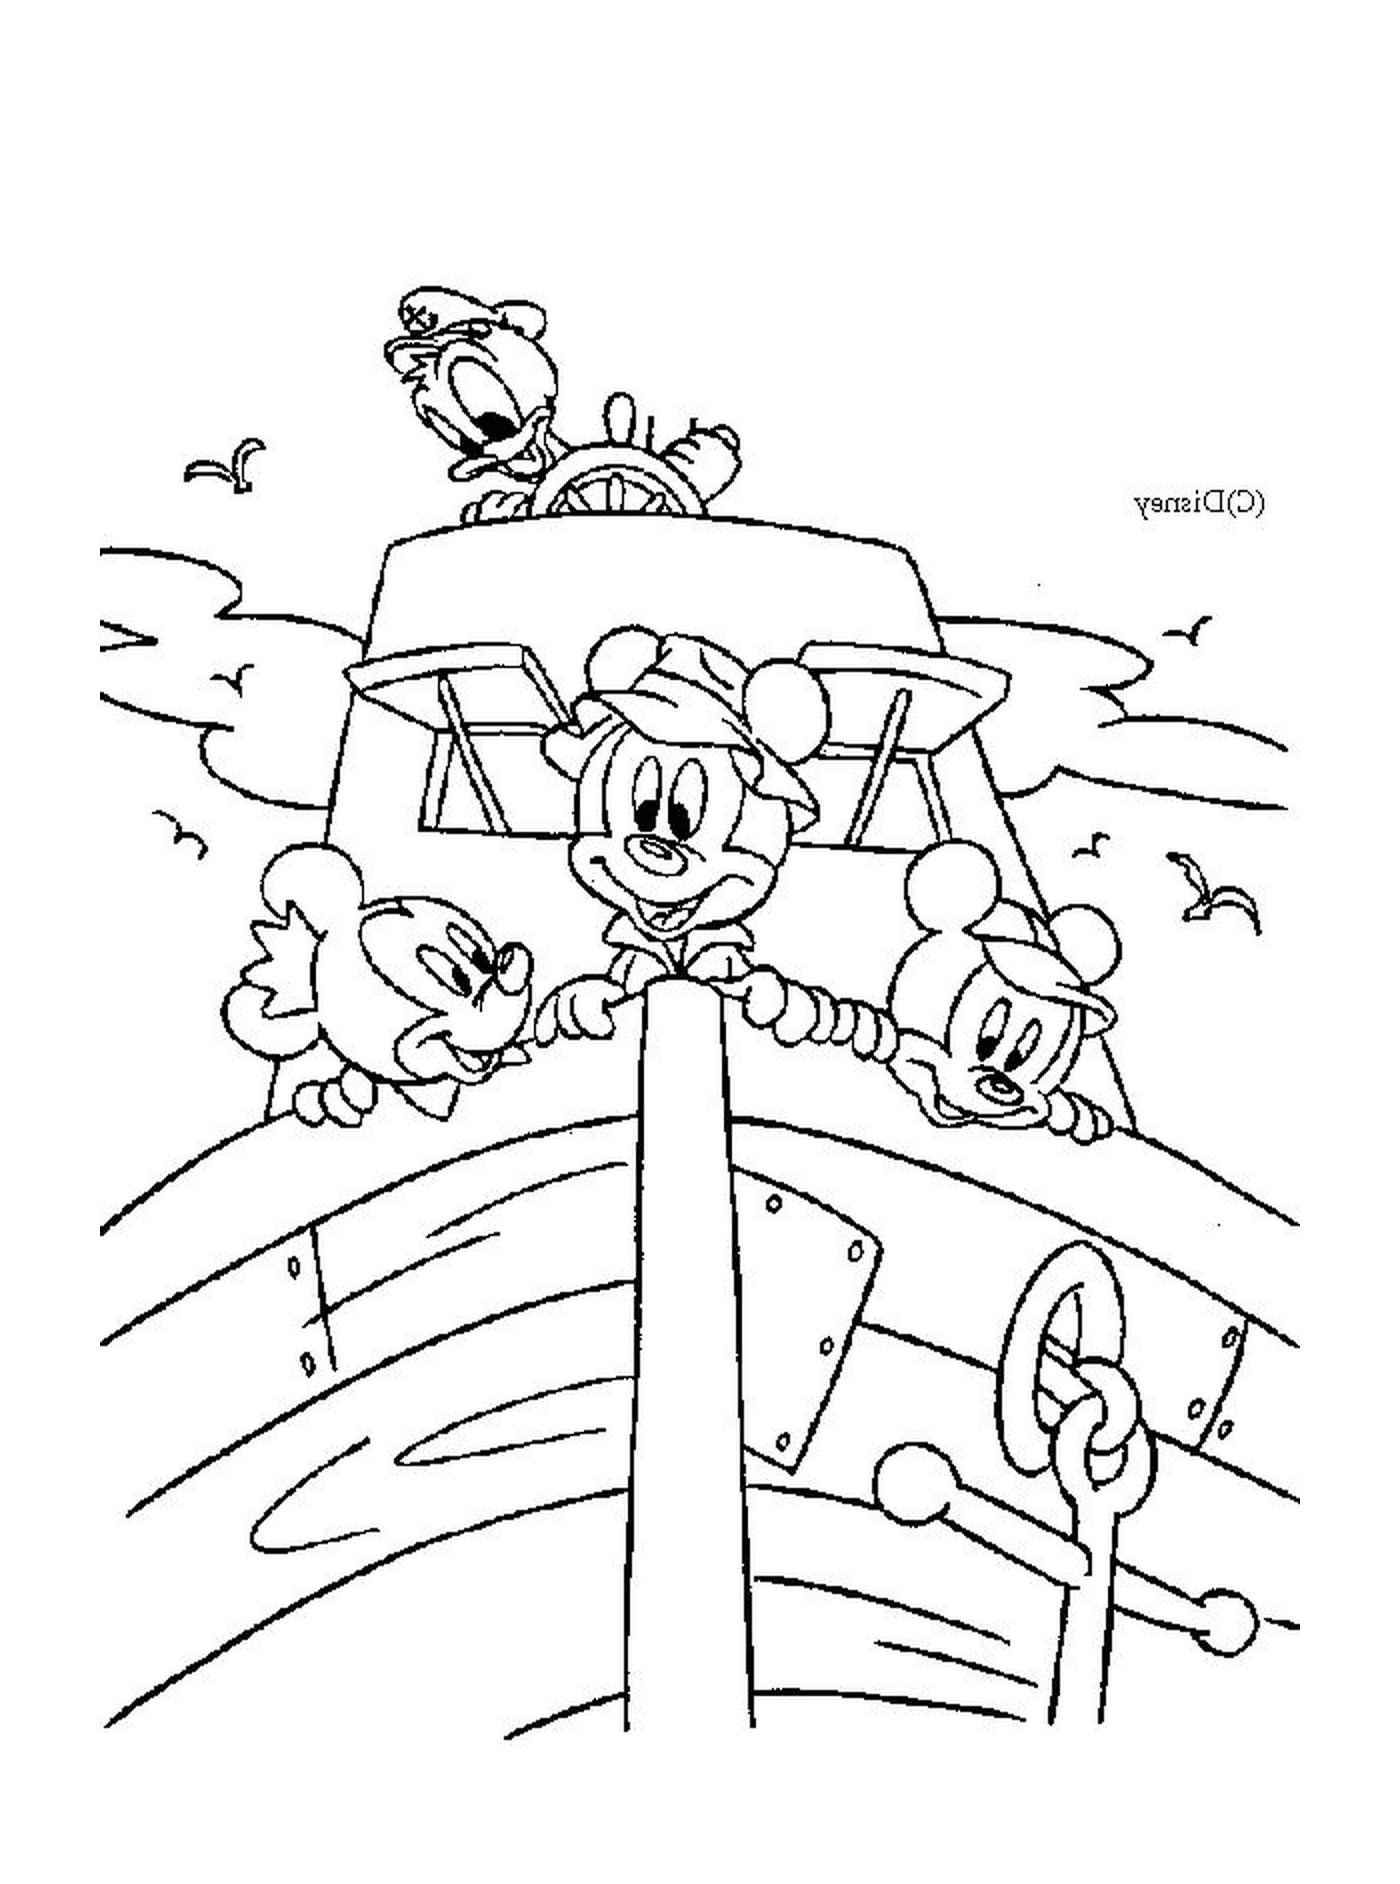  一群米老鼠和他的朋友在船上 